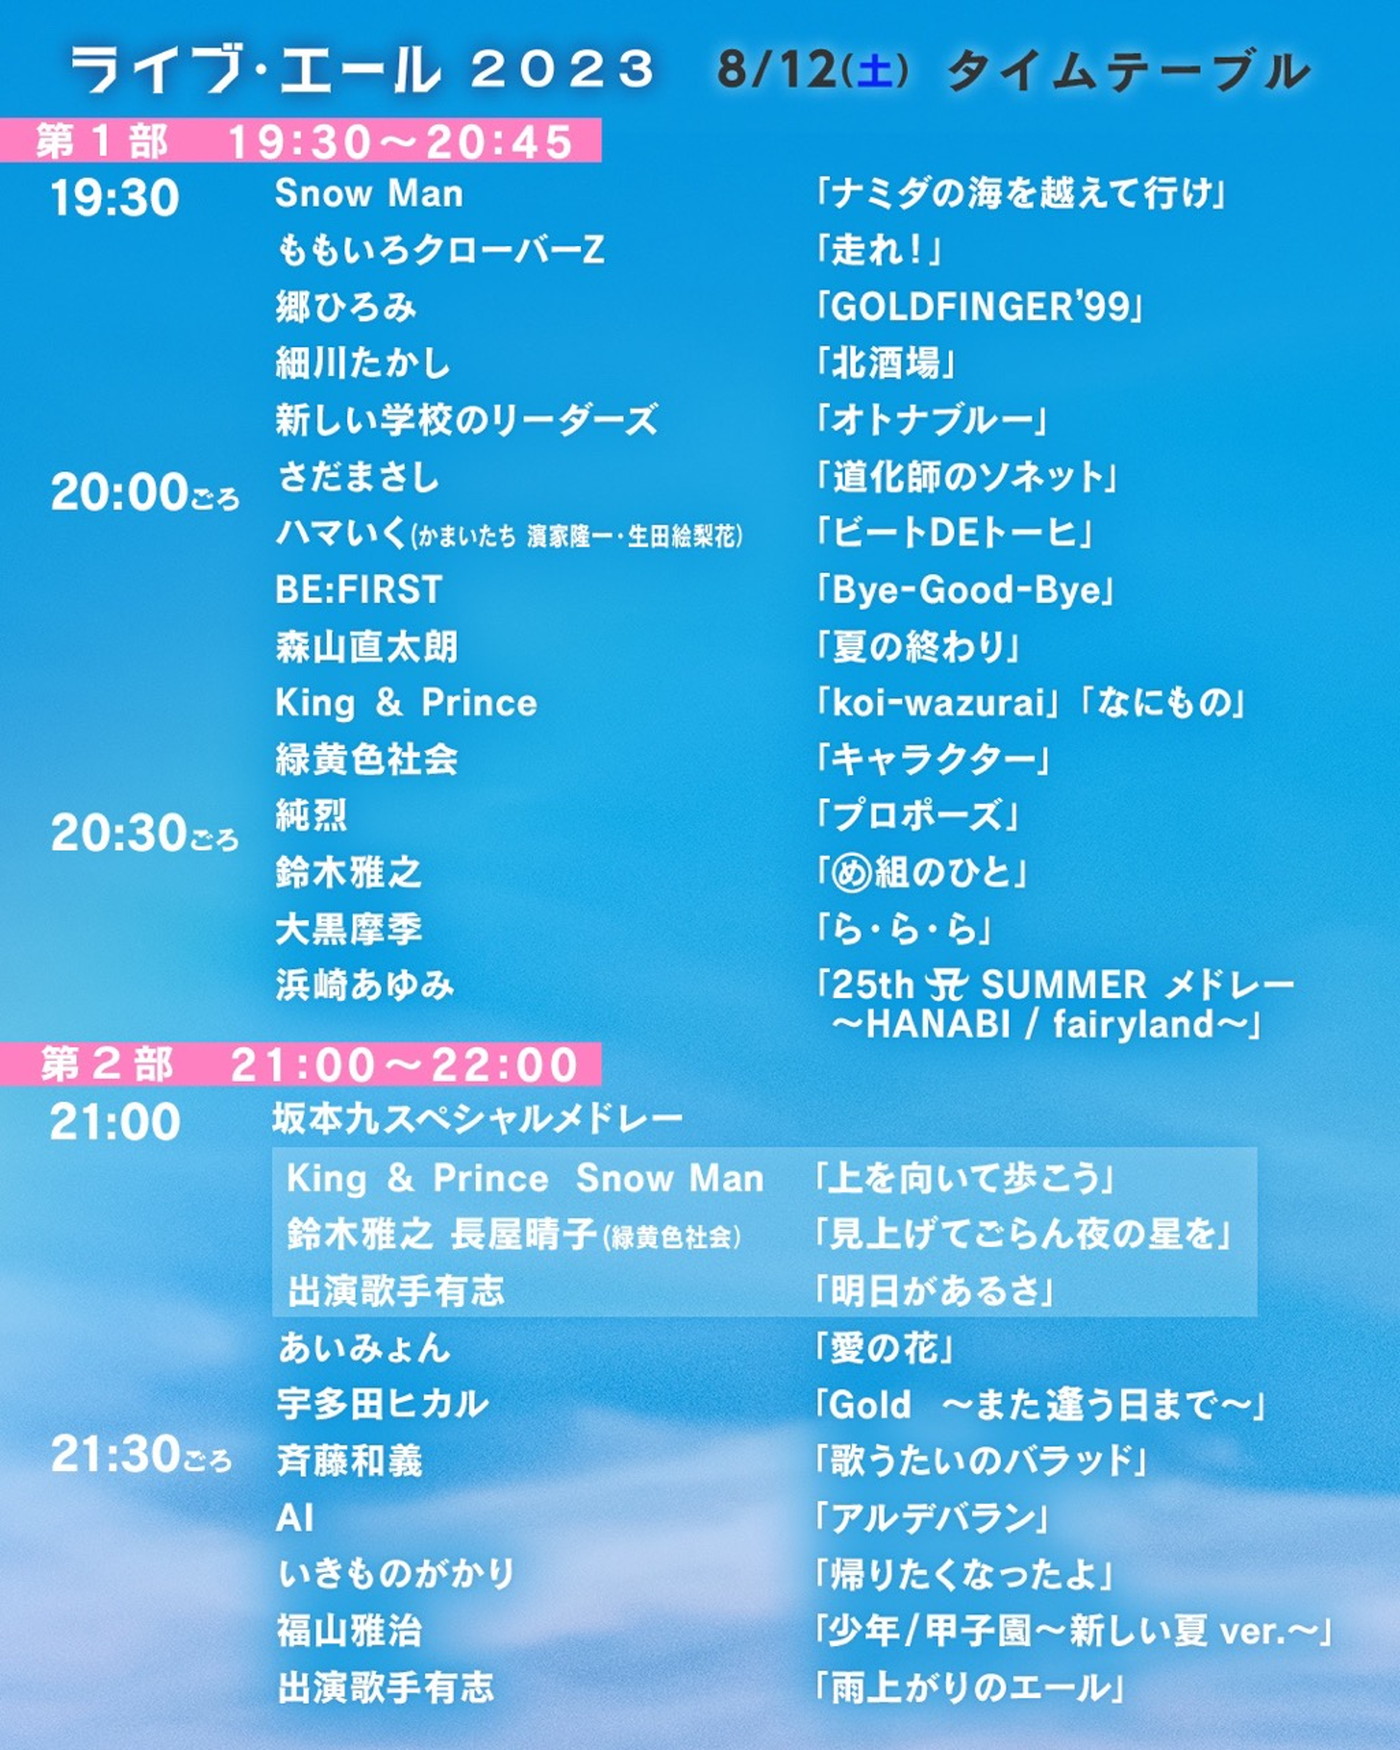 NHKの夏の大型音楽番組『ライブ・エール 2023』のタイムテーブルが発表